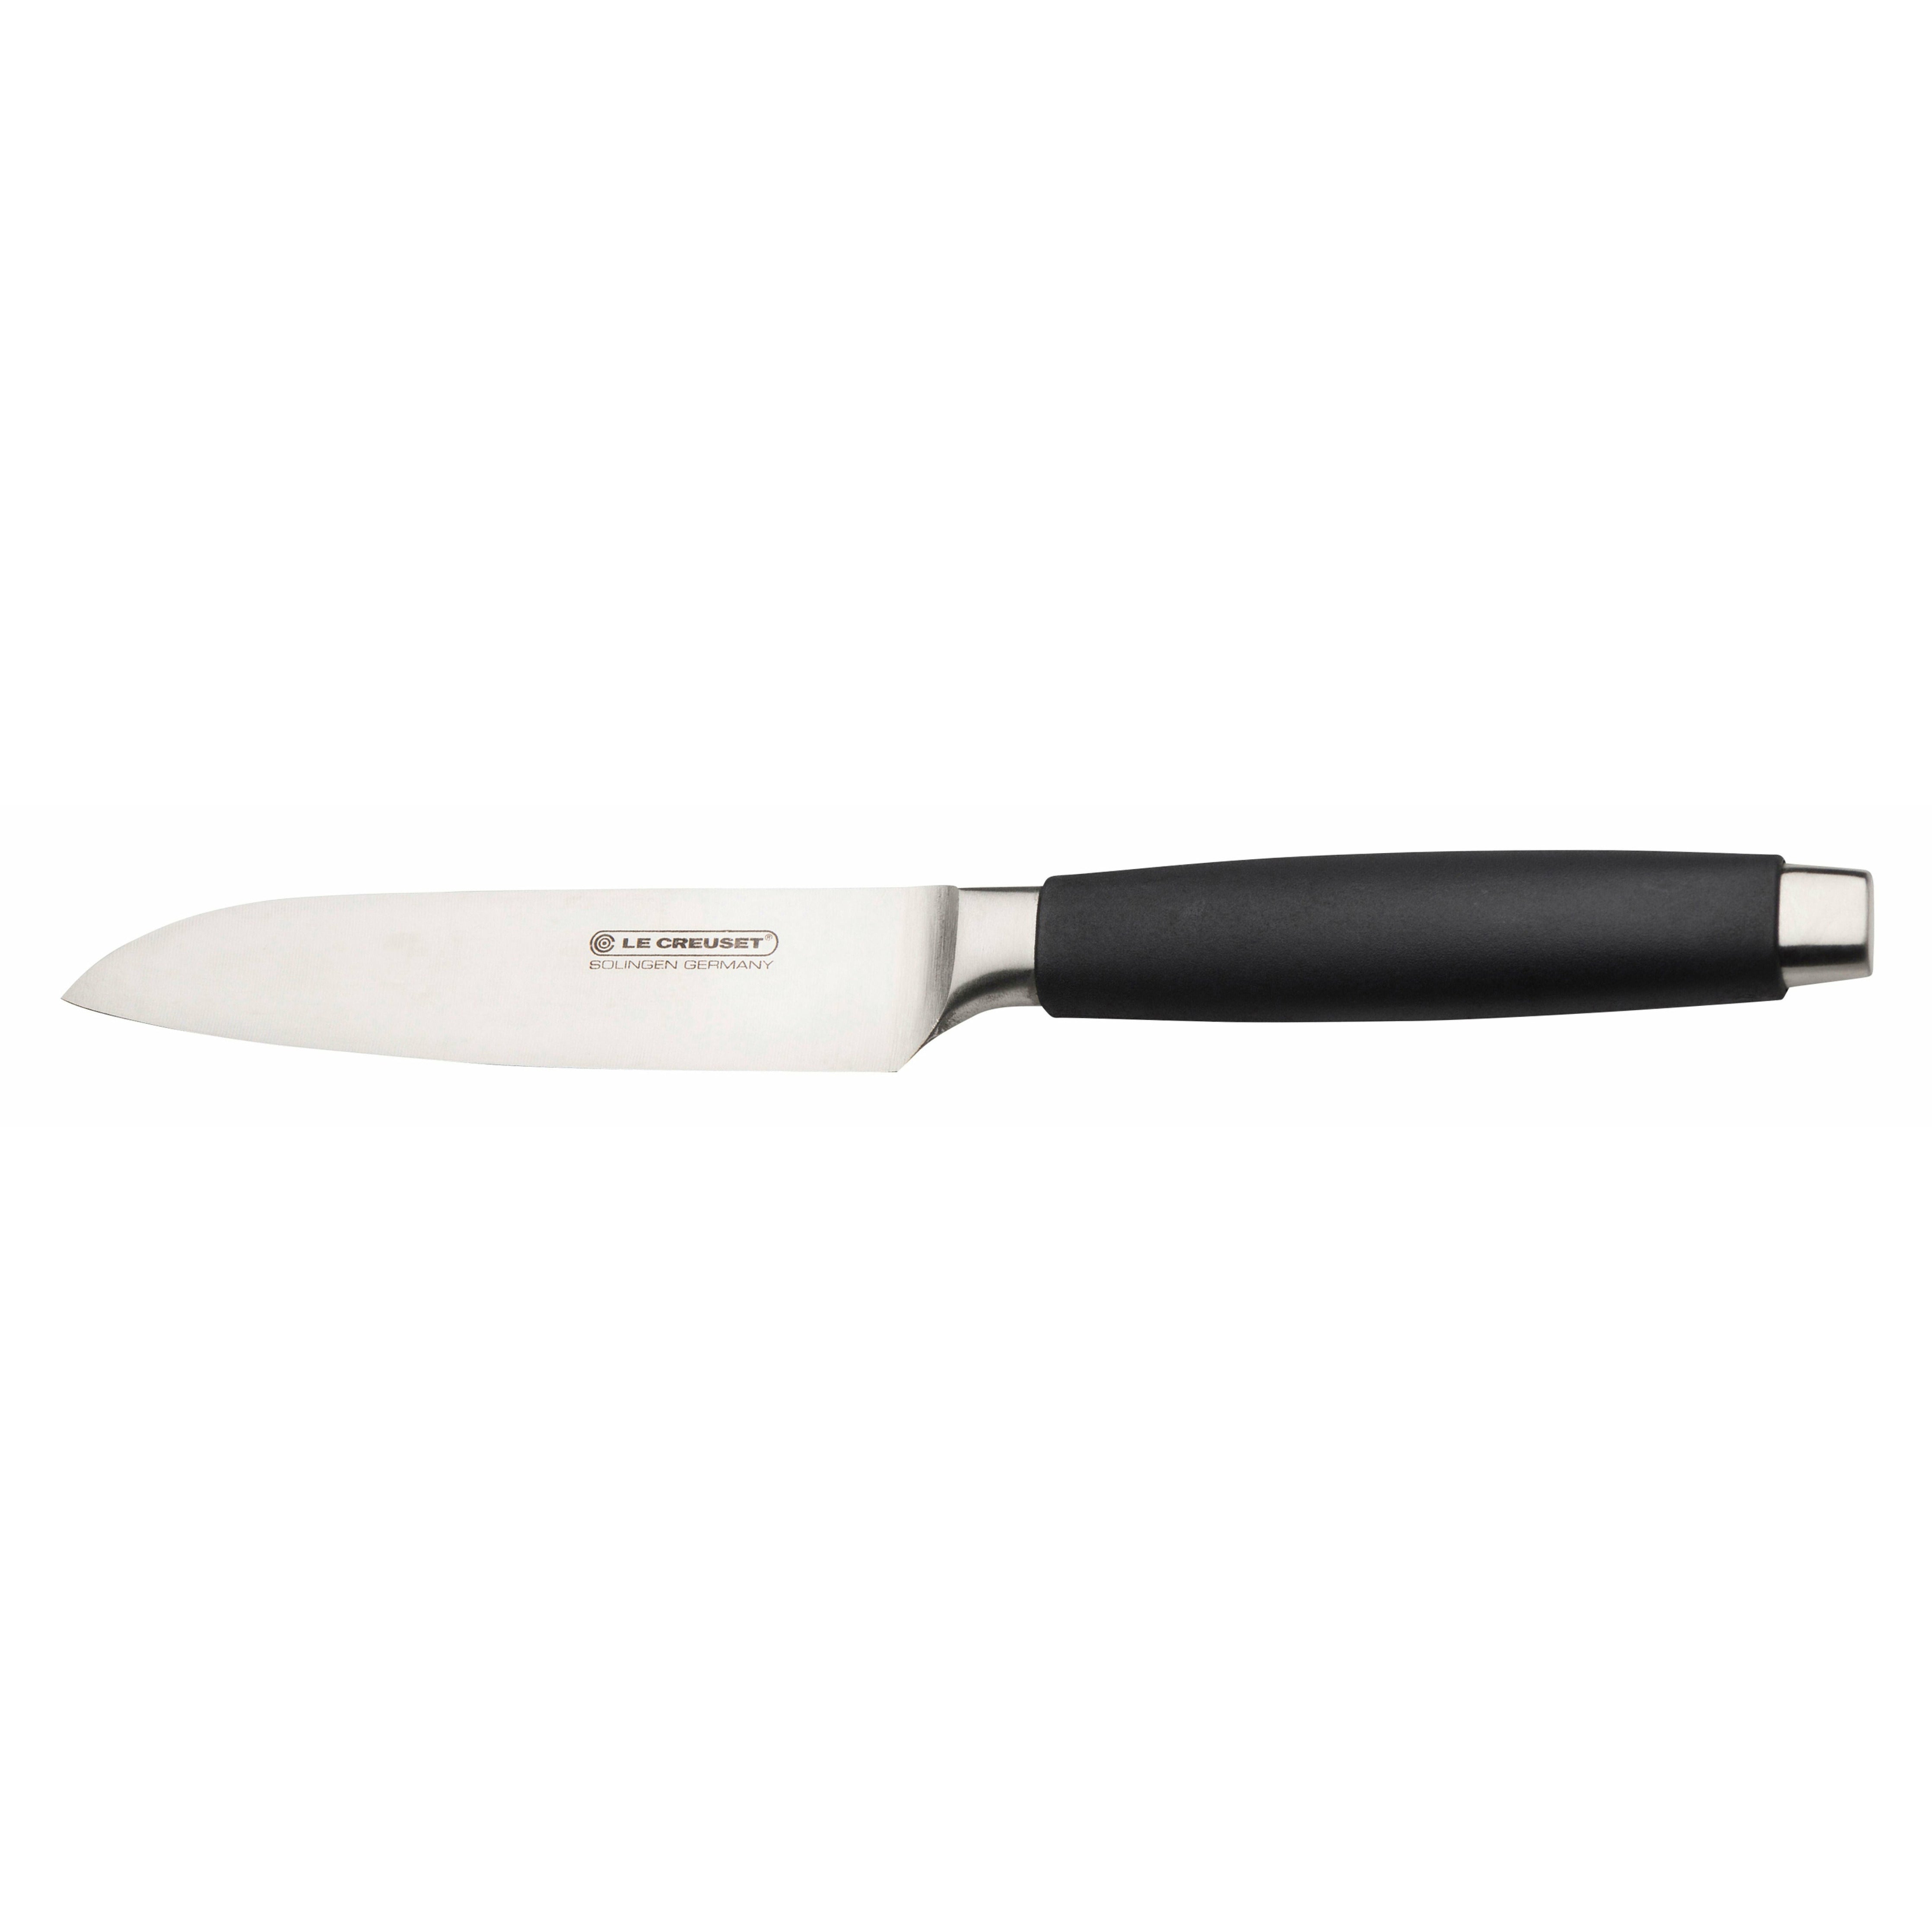 Le Creuset Santoku Knife Standard med sort håndtag, 13 cm